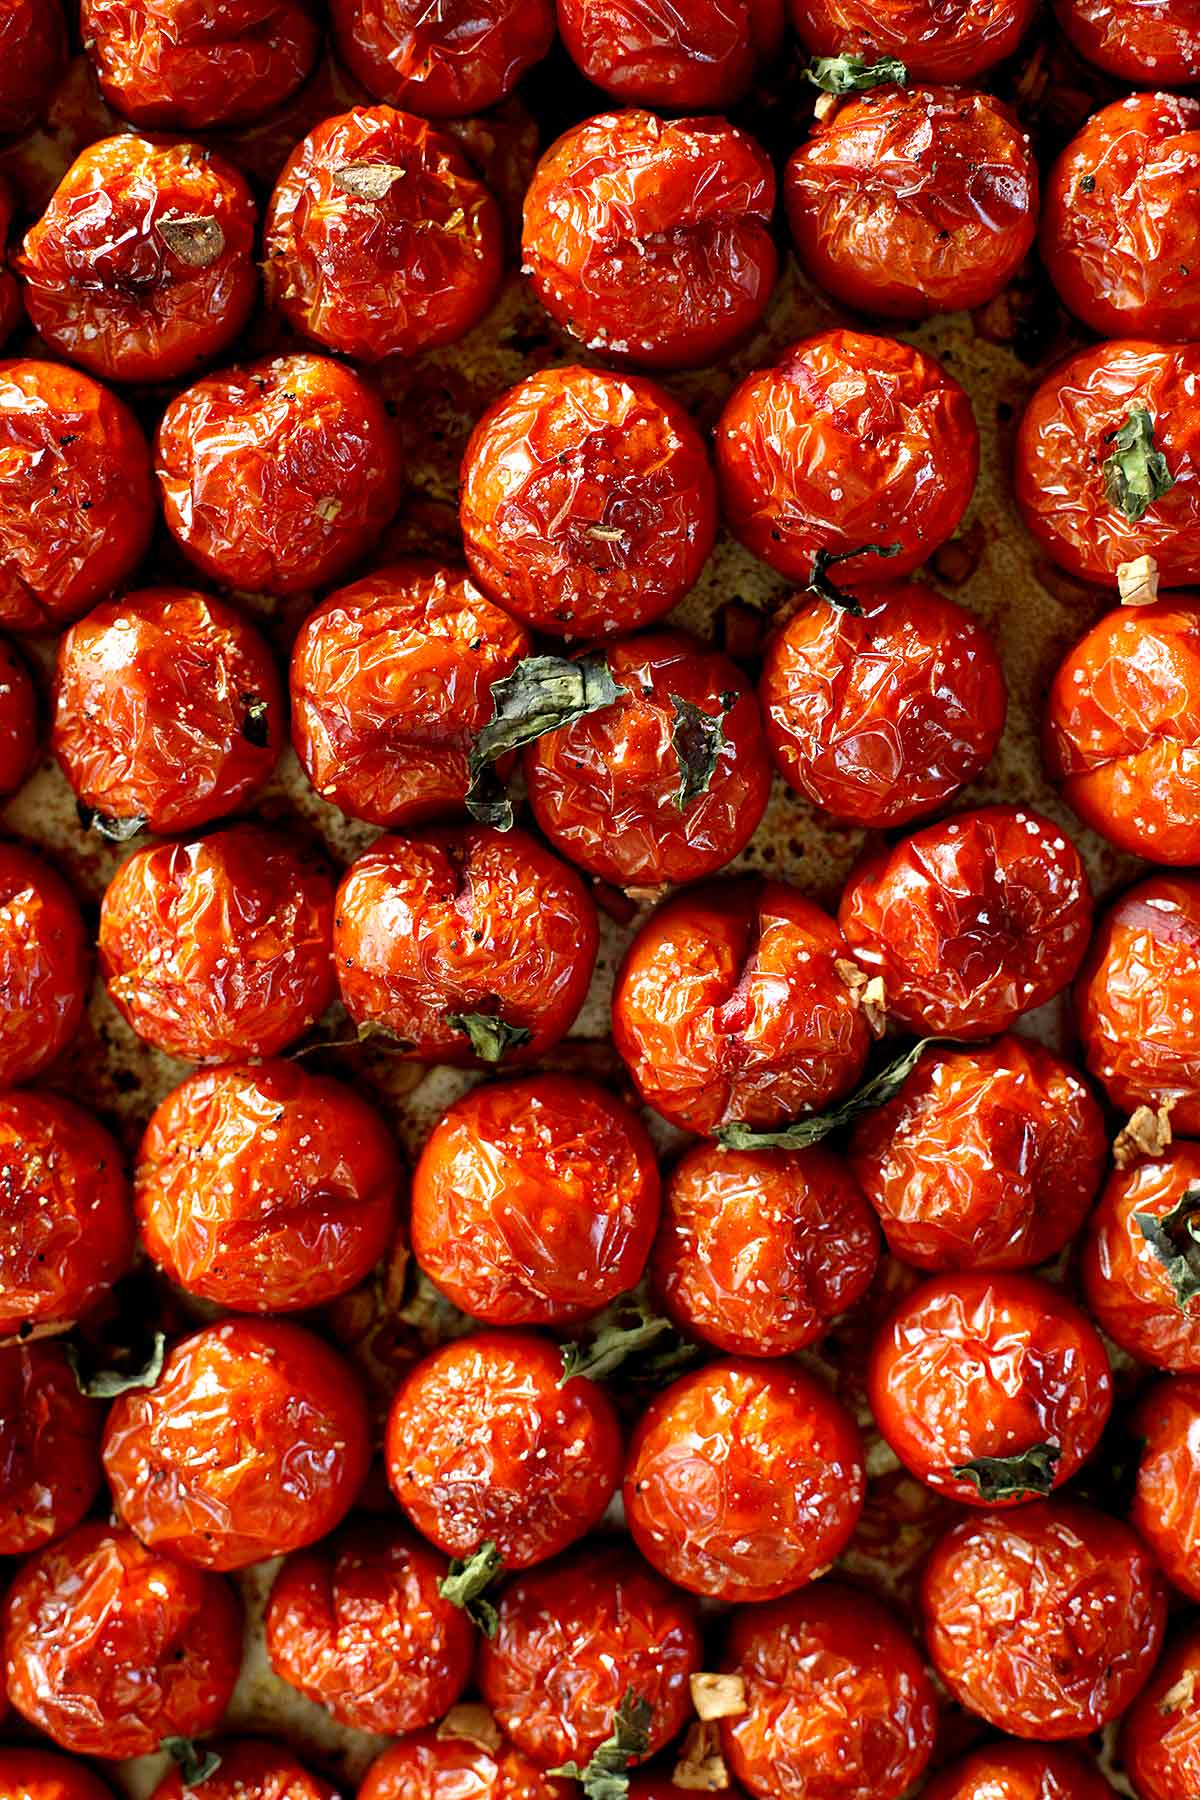 Tomate assado no forno | foodiecrush.com #forno #te #moradia #tomate #receita #recipiente #recipiente